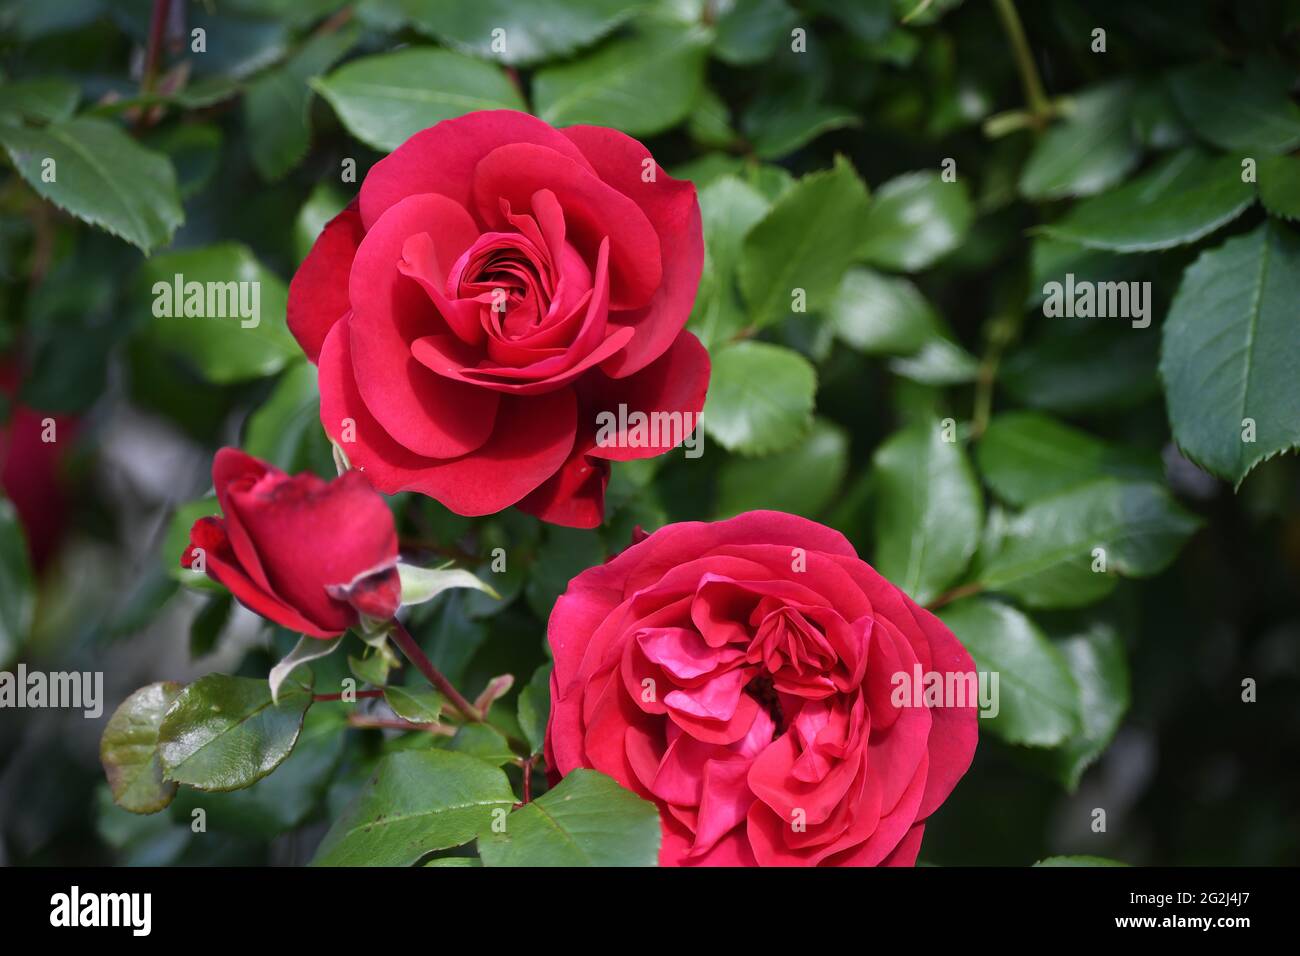 Heilpflanze Rose - rosa - mit herrlicher roter Rosenblüte als Zeichen der Liebe und Freundschaft - Grundstock der europäischen Gartenkultur, Heilpflan Foto de stock